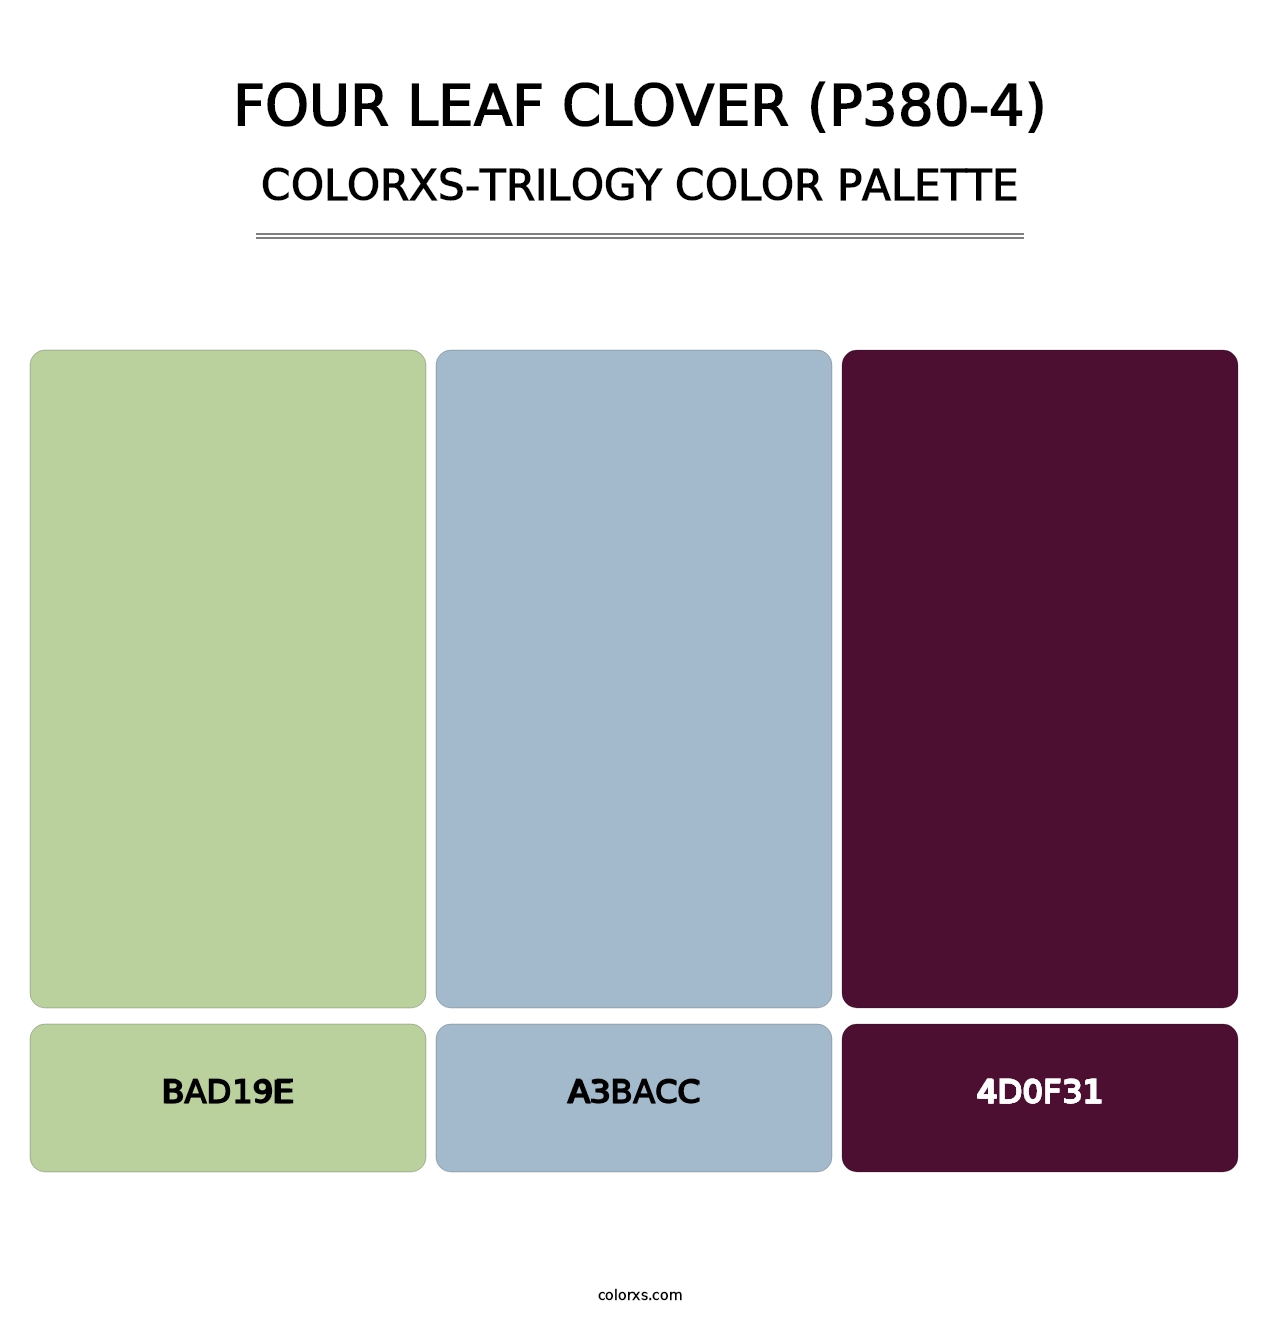 Four Leaf Clover (P380-4) - Colorxs Trilogy Palette